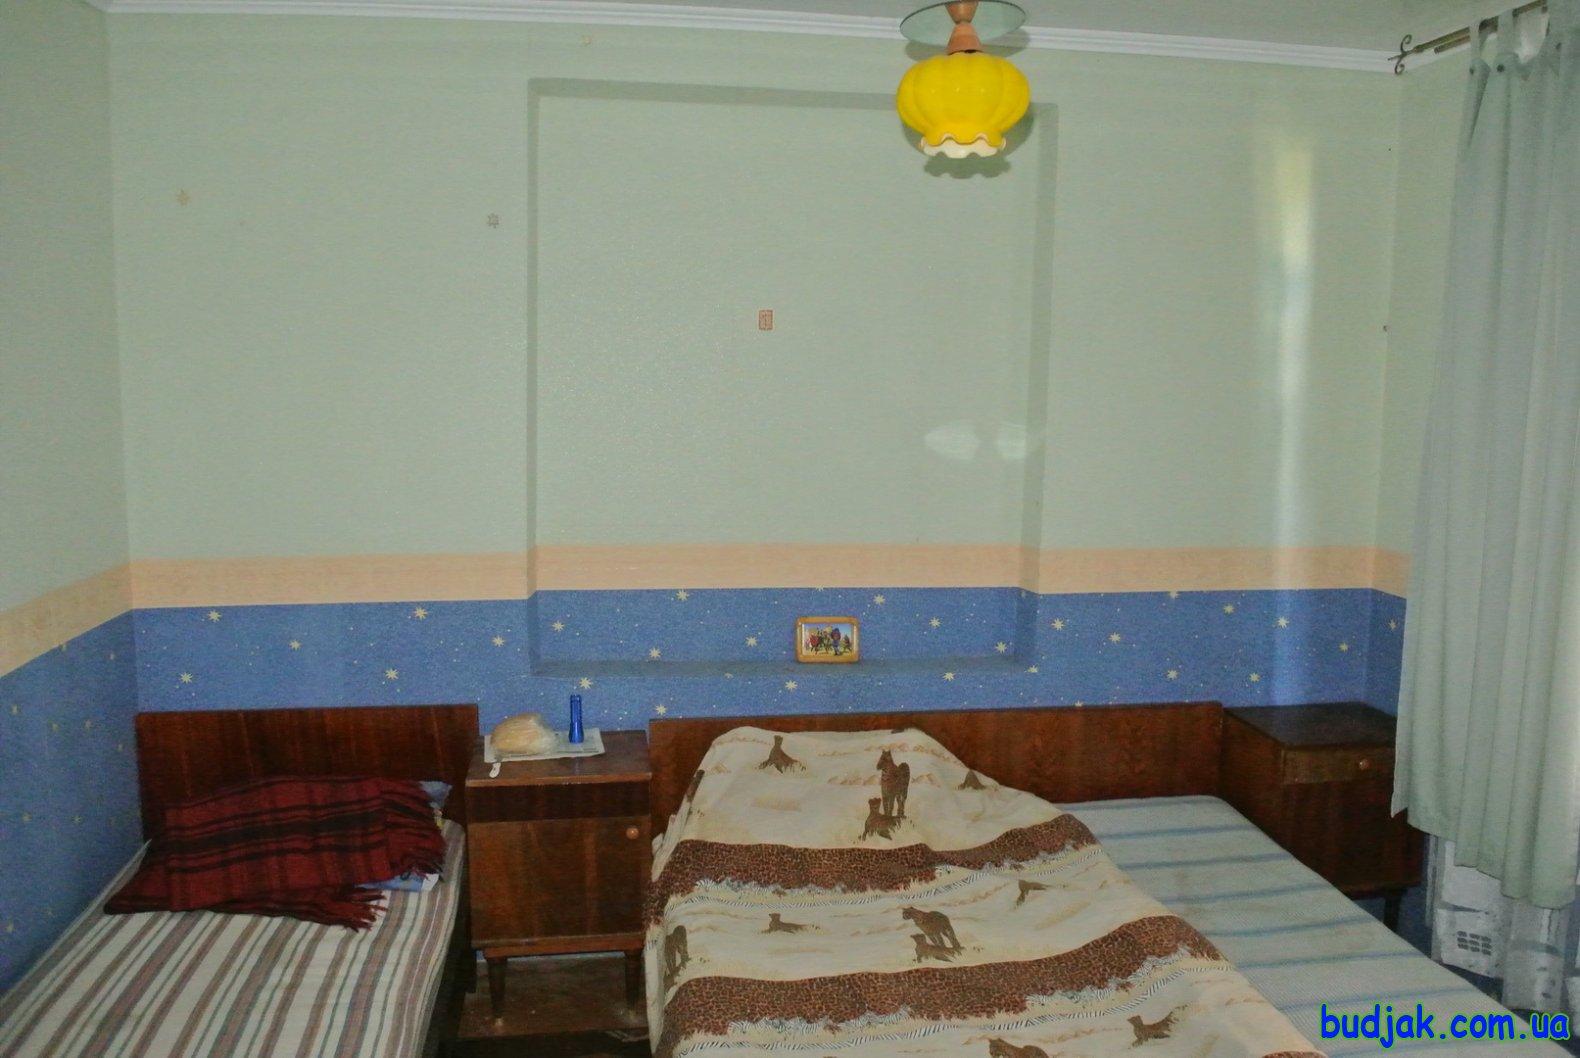 Гостиний будинок відпочинку «У друзів» курорт Росєйка. Фото № 10225